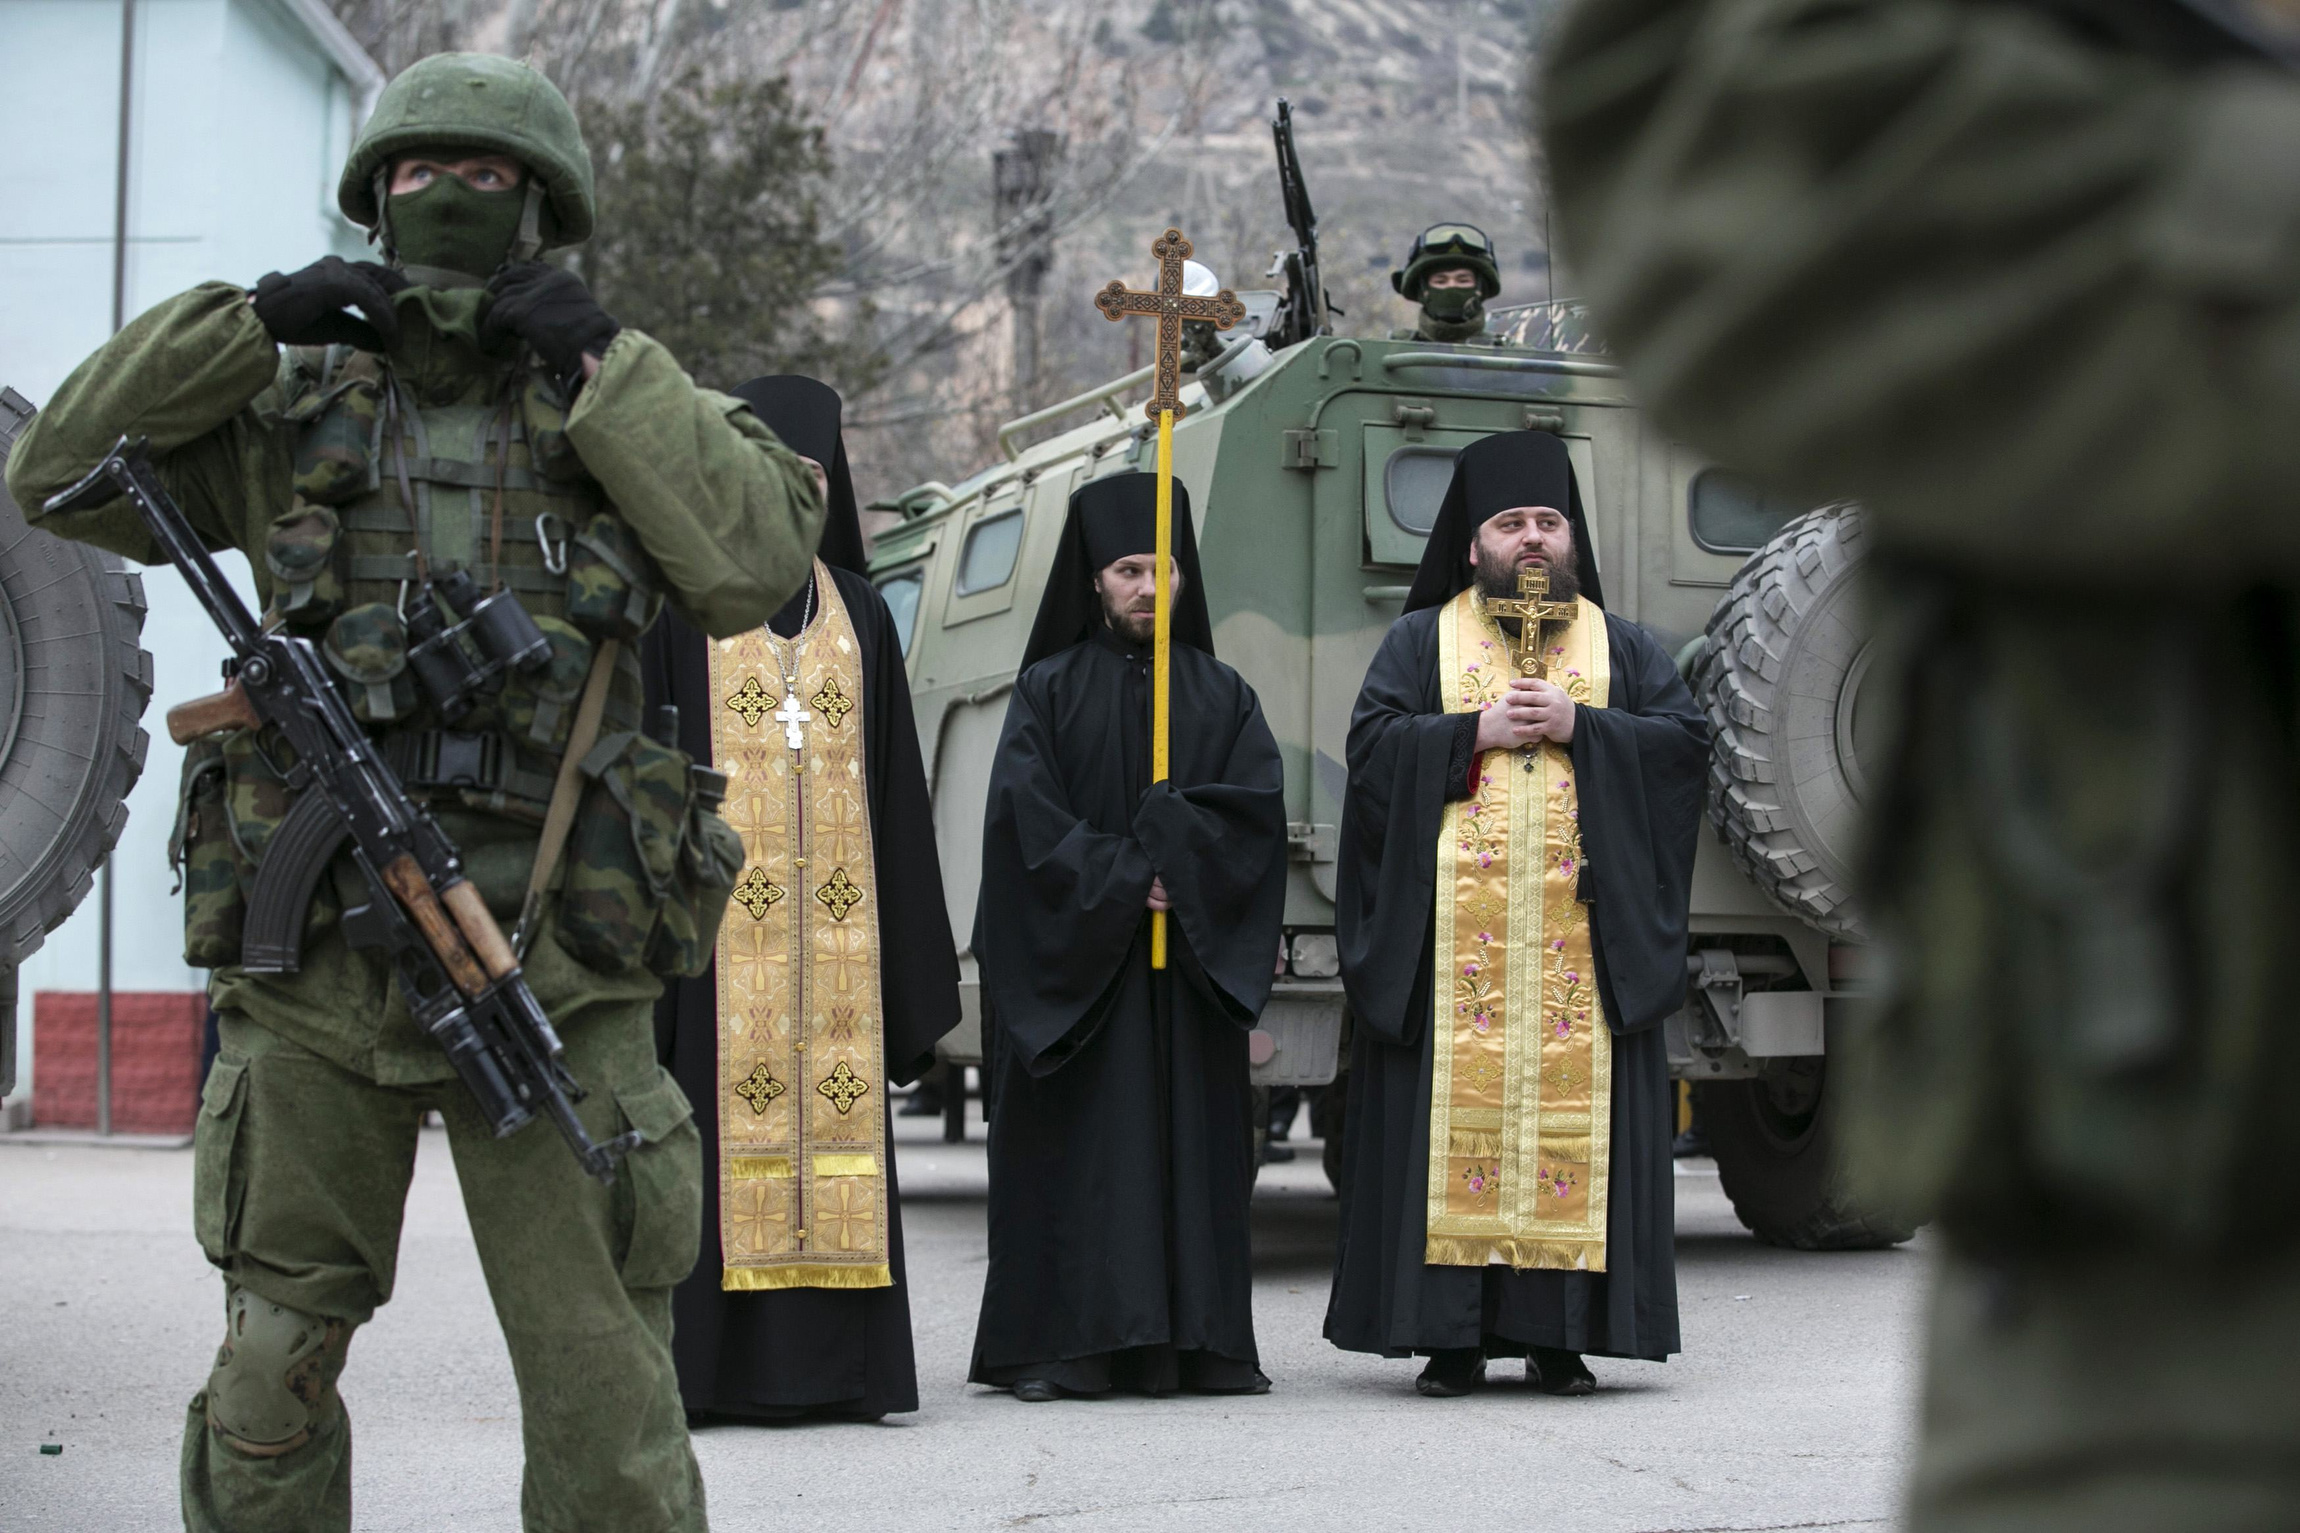 Ορθόδοξοι ιερείς ευλογούν τους Ρώσους καταδρομείς λίγο πριν κυνηγήσουν Ουκρανούς νεοναζί (βίντεο)